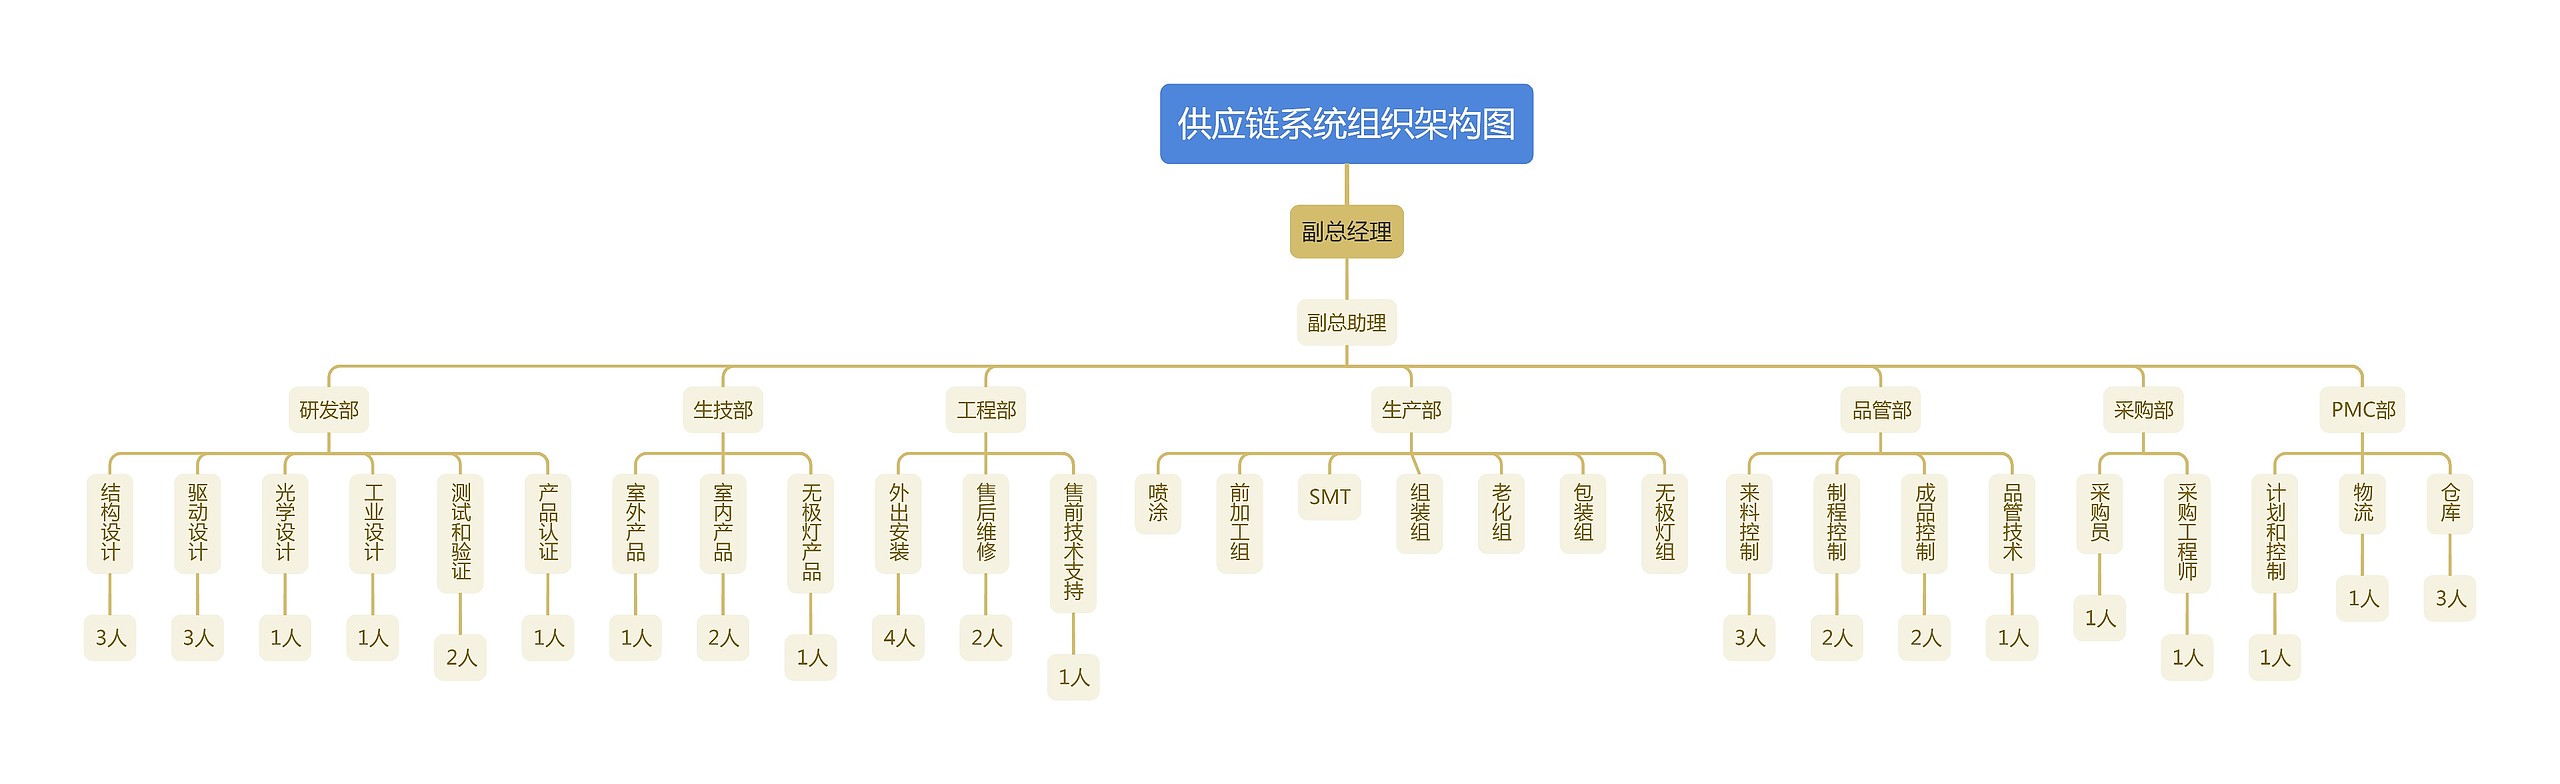 供应链系统组织架构图